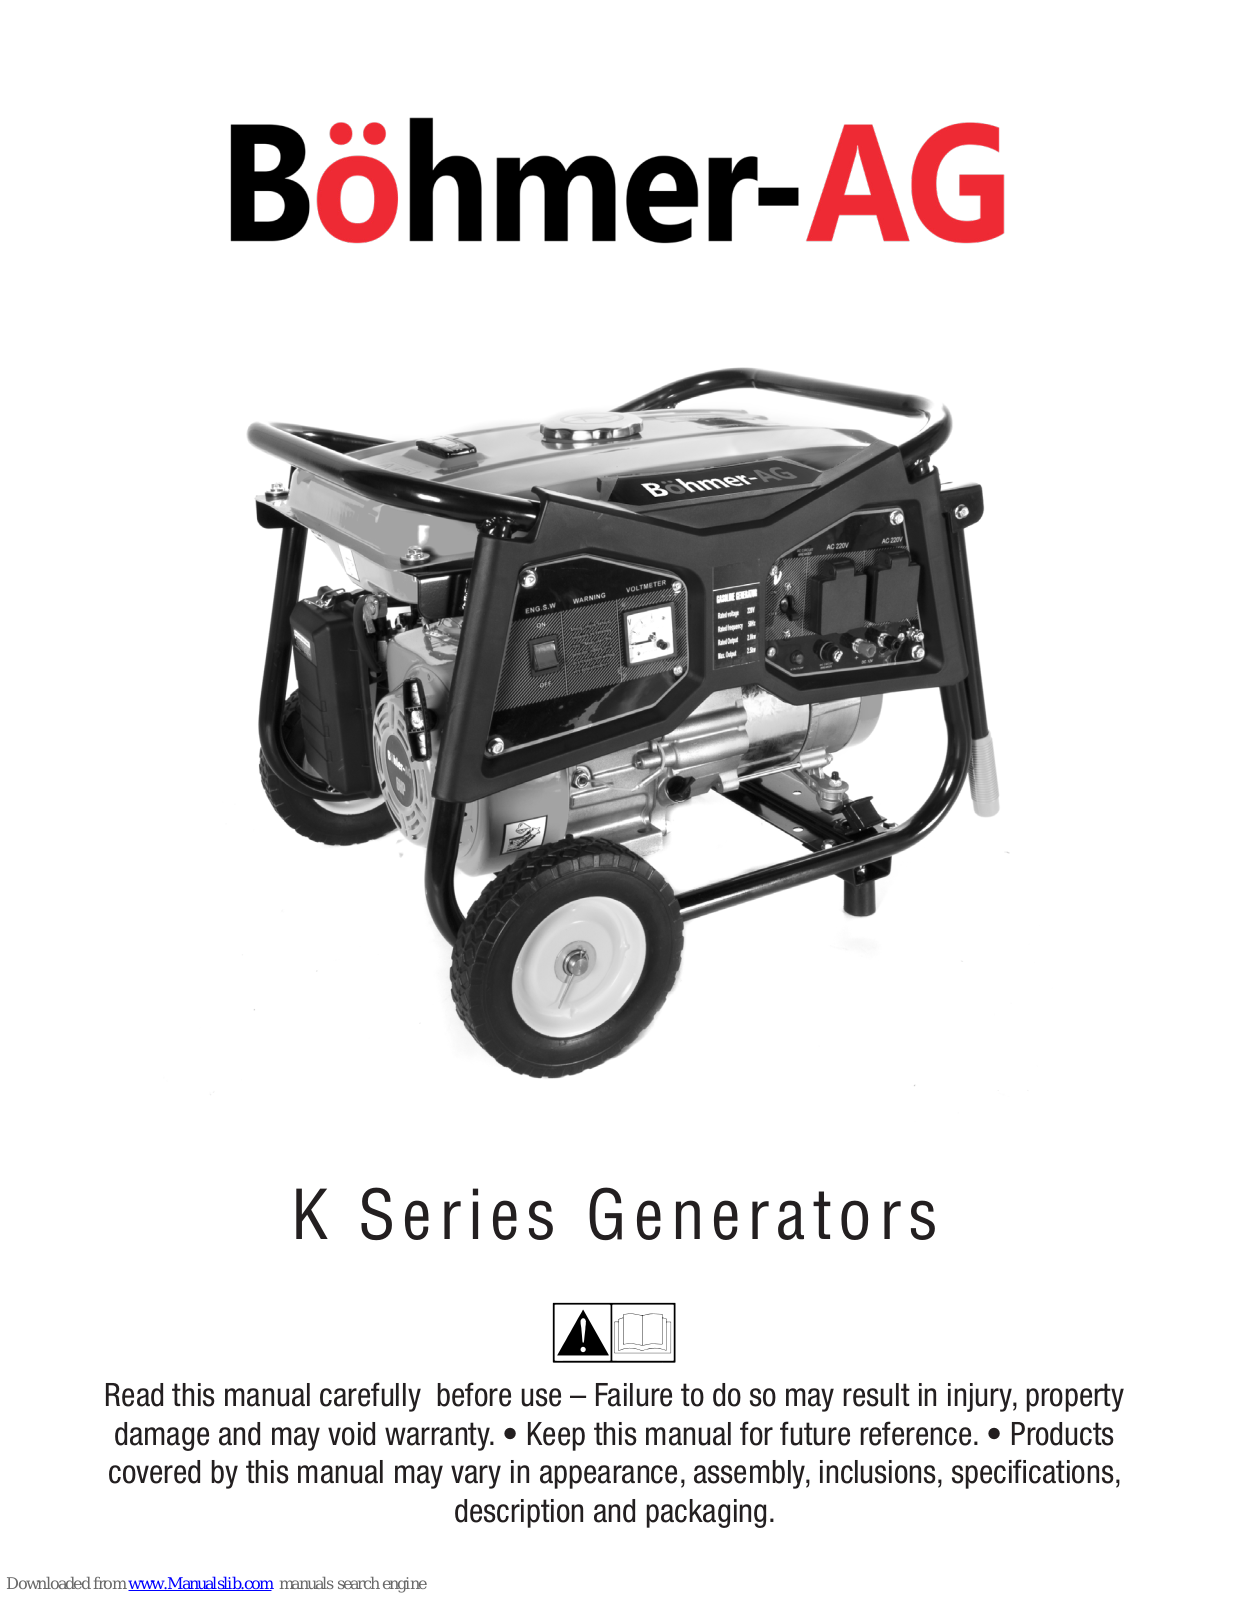 Bohmer-AG K, 2500K, 3800E, 3000K, 5000E Manual